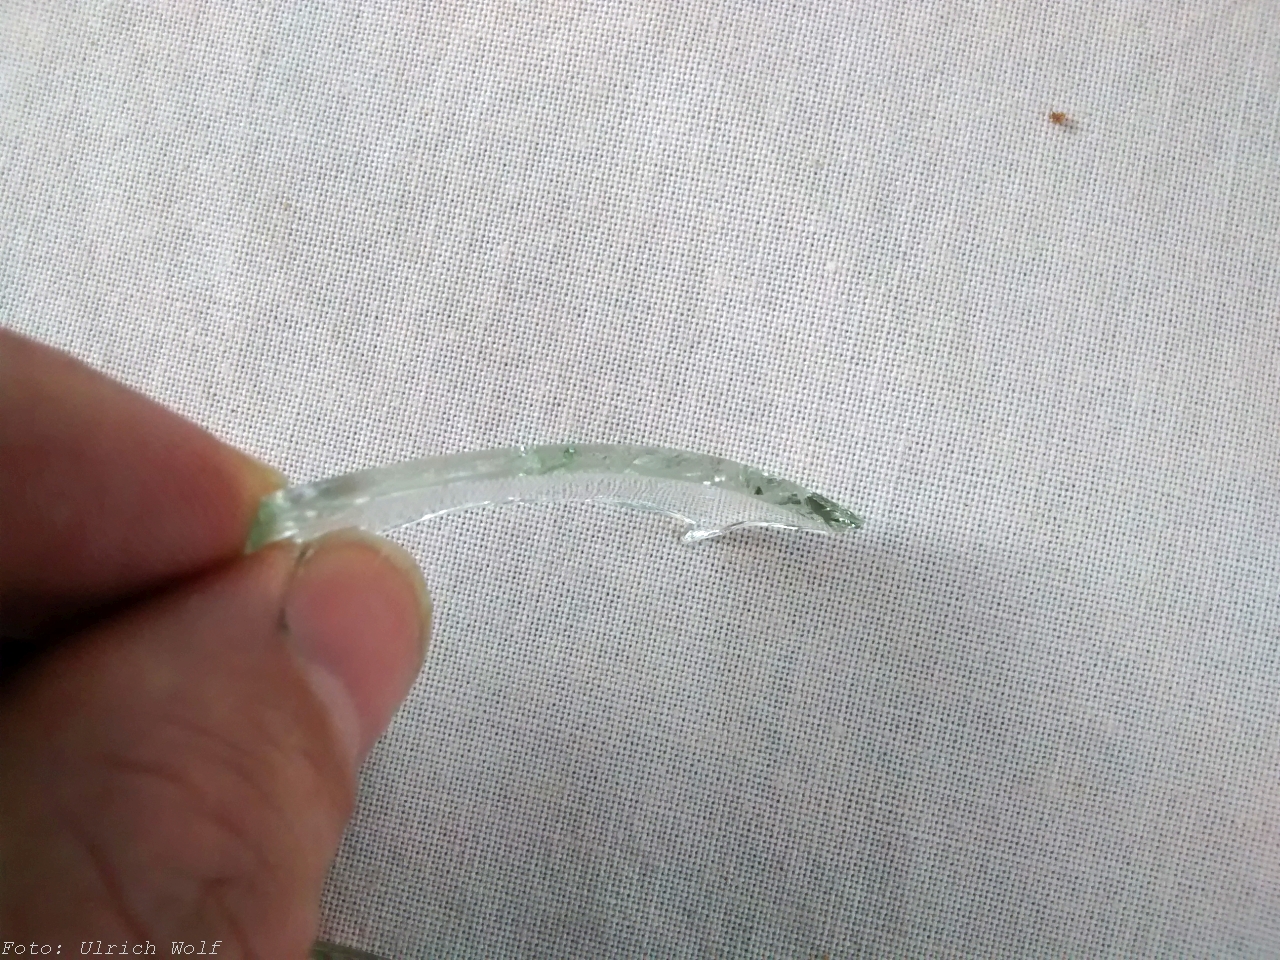 Versuch mach “kluch”… Ein Experiment zum Glasscherbenmythos